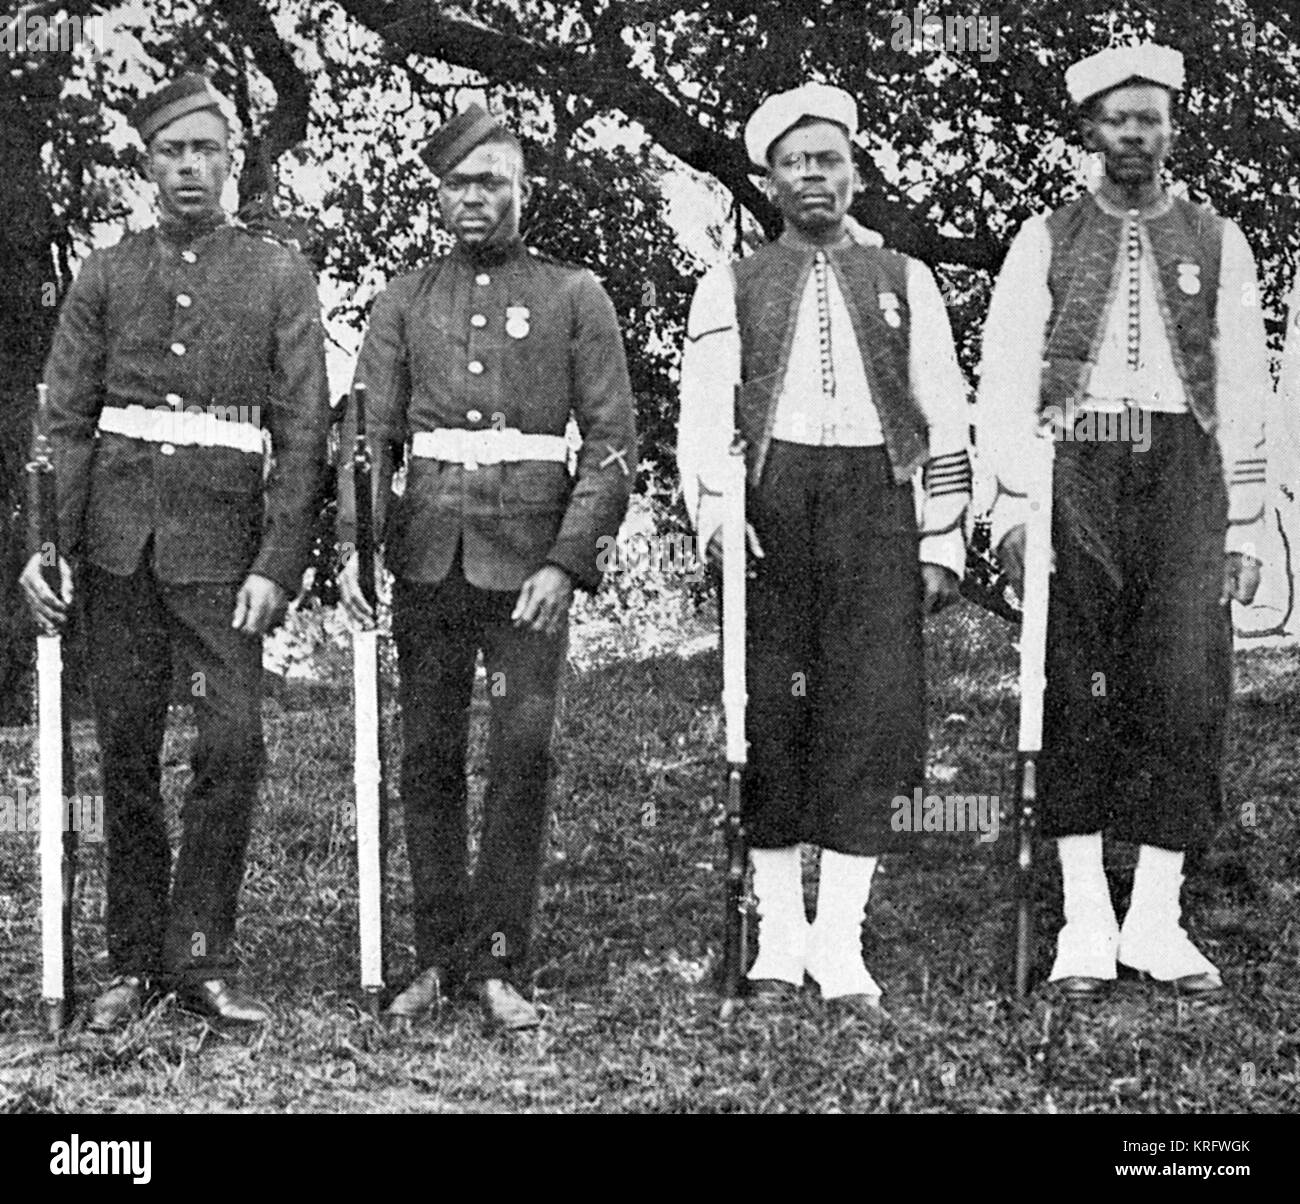 Soldaten aus Jamaika während des Ersten Weltkrieges. Royal Engineers auf der linken und auf der rechten Seite. Datum: 1914 Stockfoto